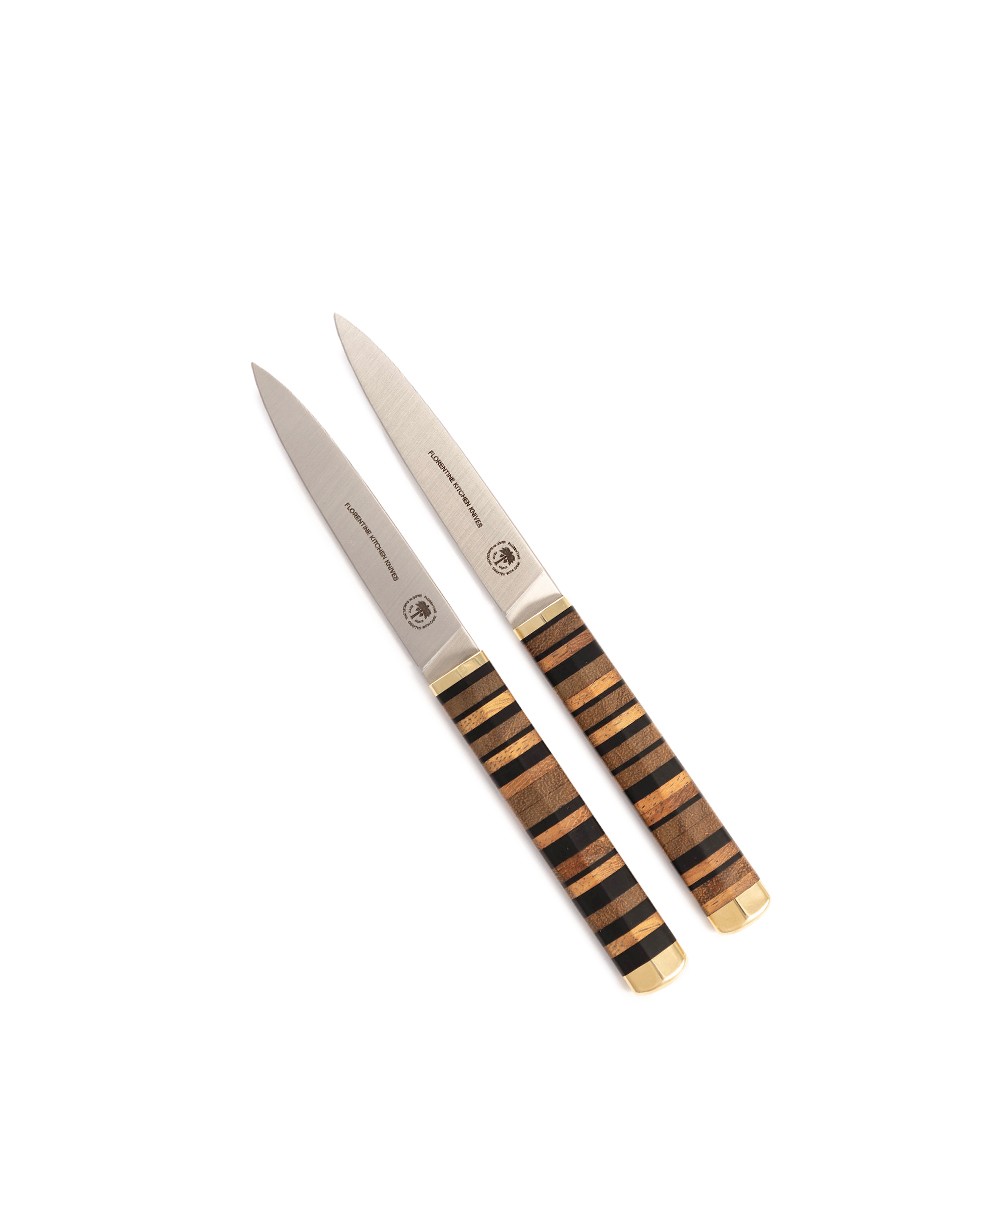 Produktbild des Florentine Table Knife in wood von Florentine Kitchen Knives im RAUM concept store 